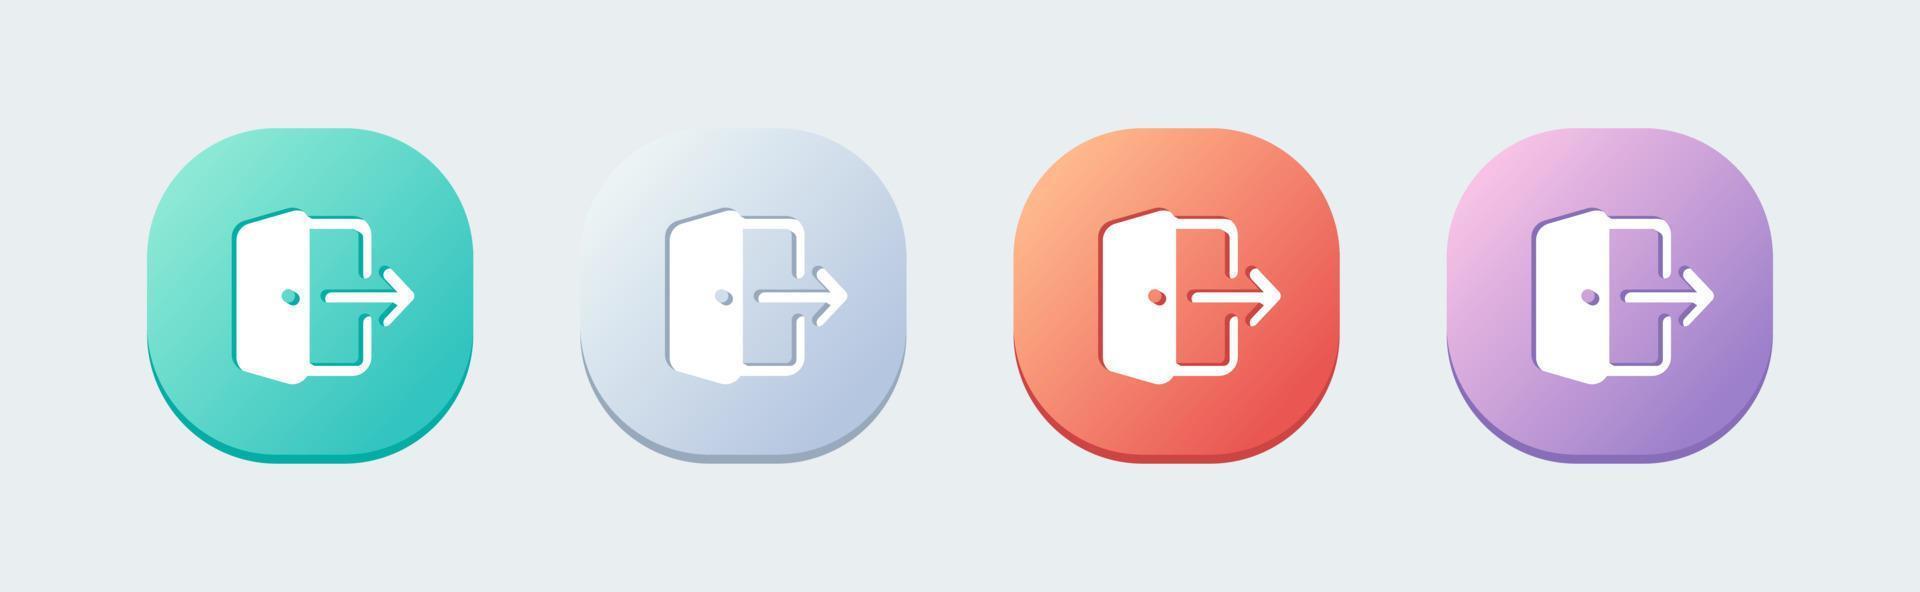 déconnectez-vous d'une icône solide dans un style design plat. illustration vectorielle des panneaux de sortie. vecteur